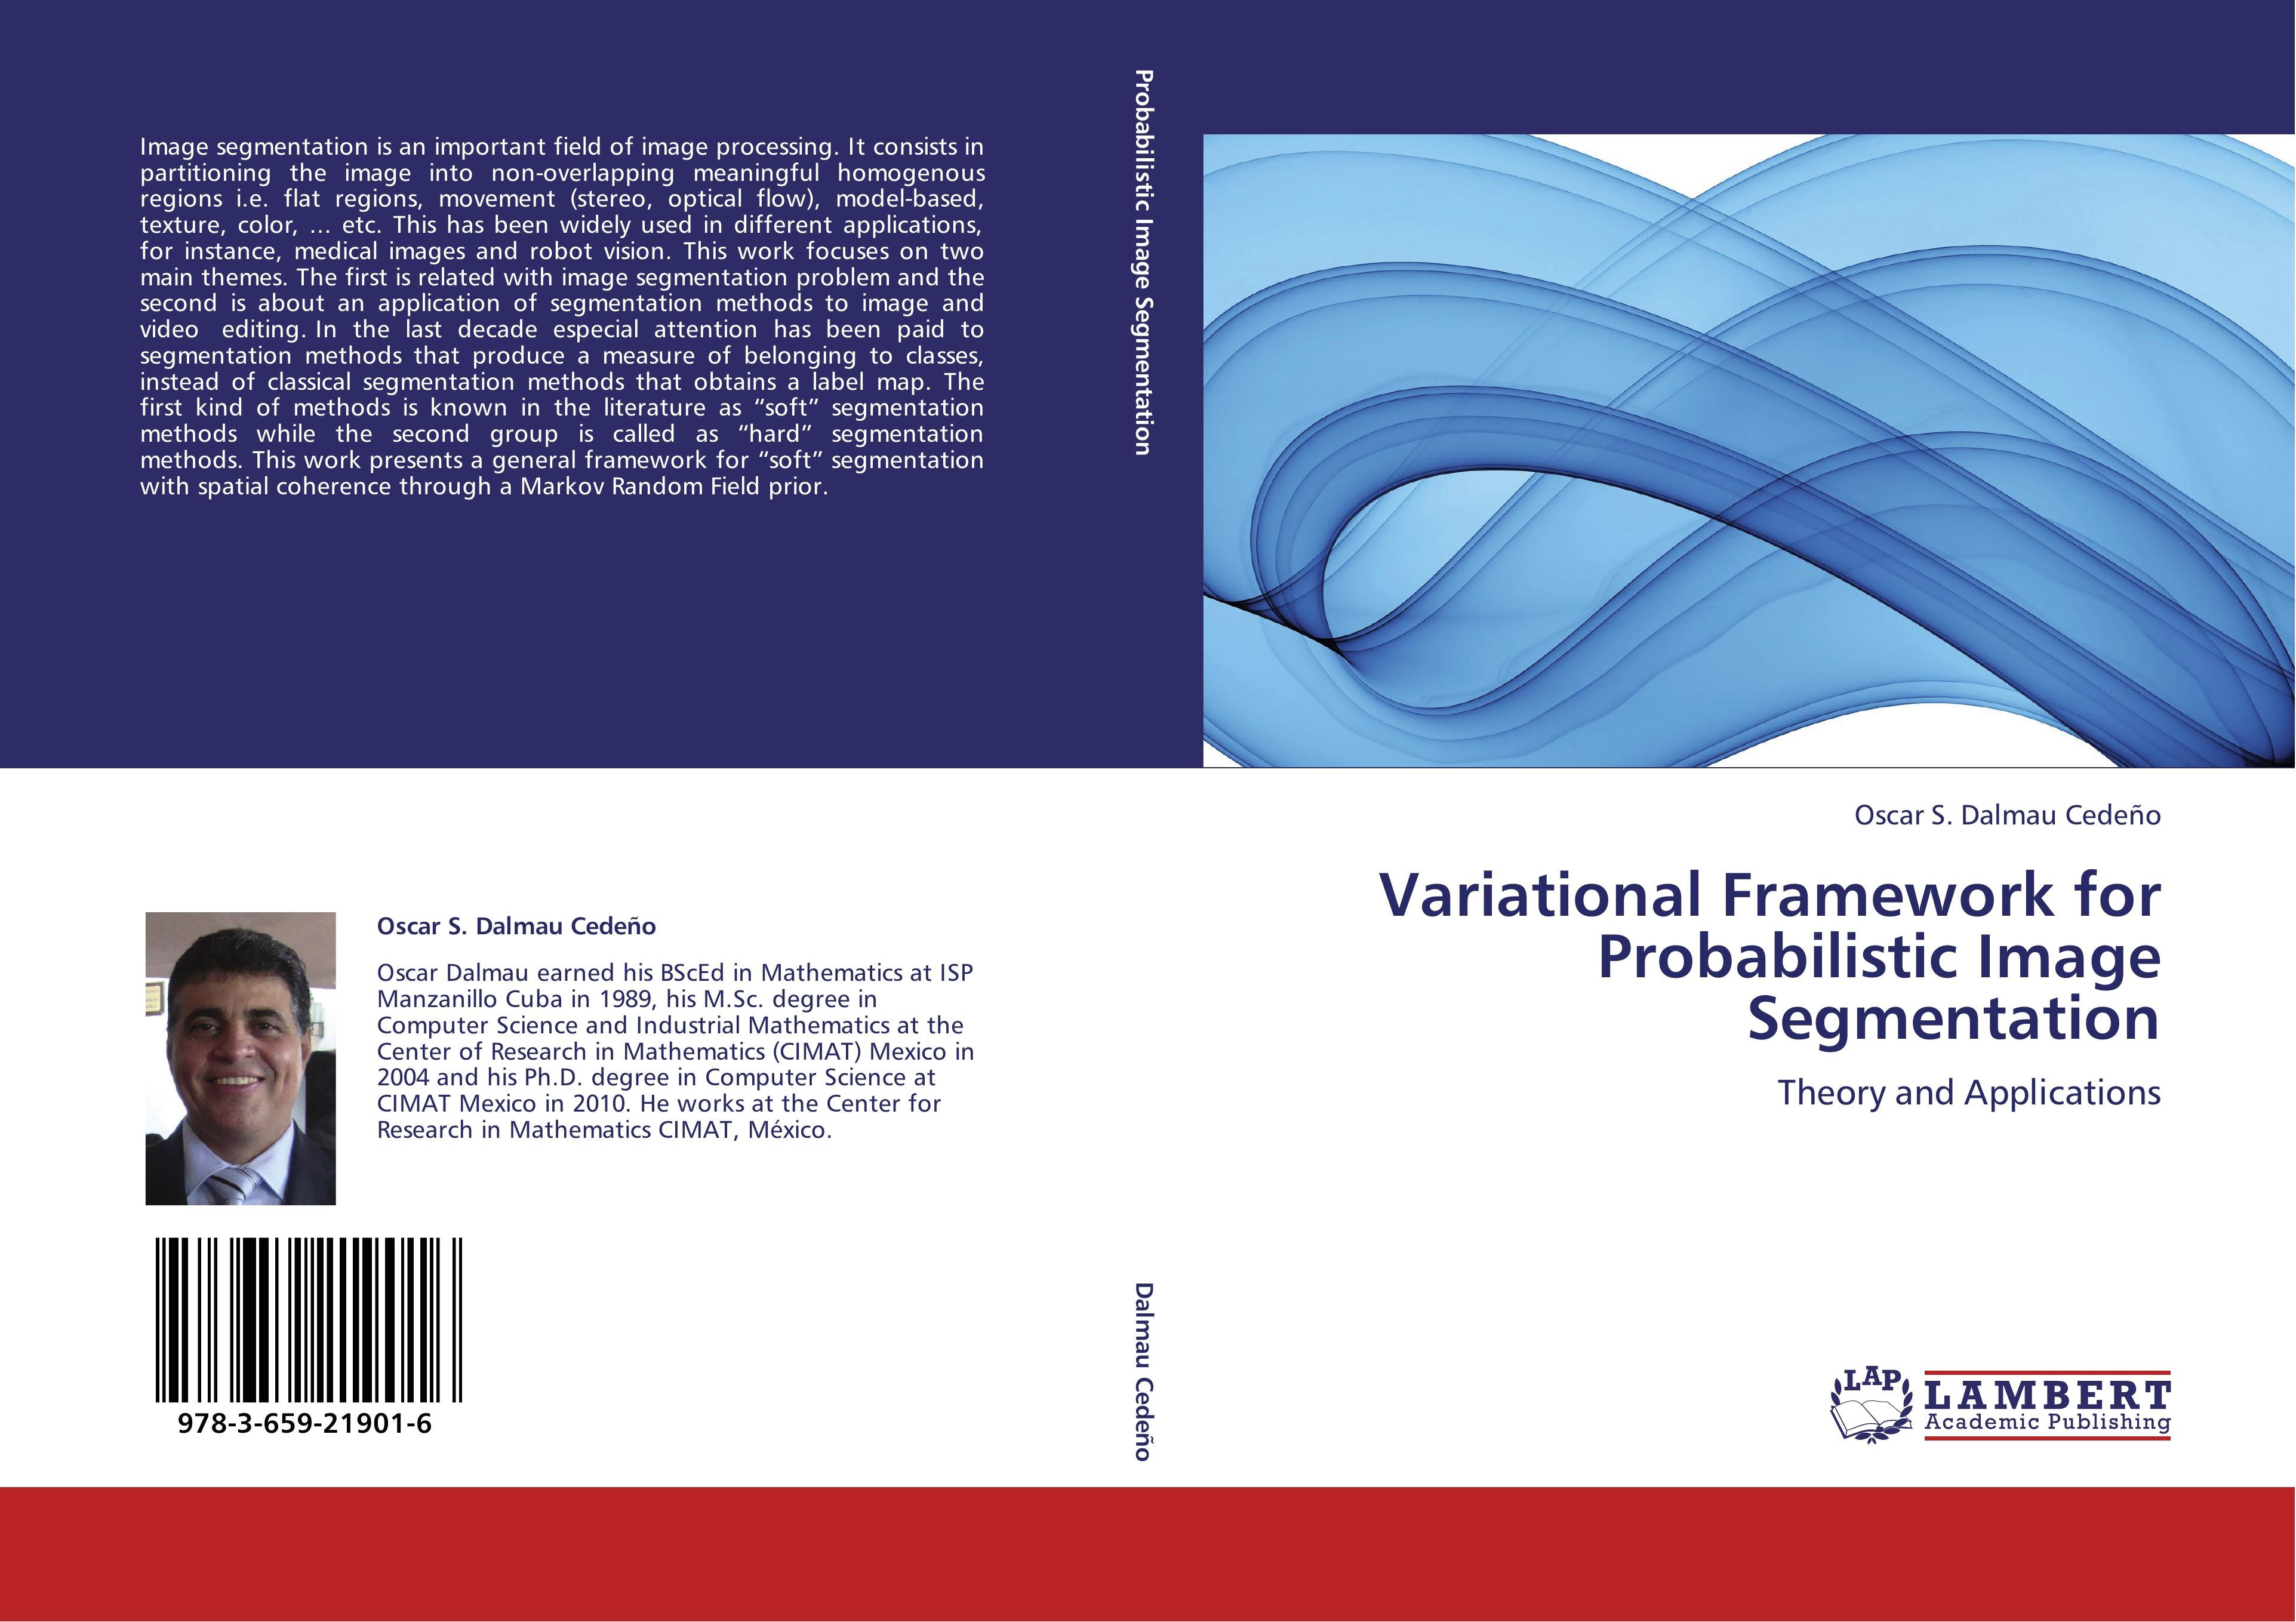 Variational Framework for Probabilistic Image Segmentation - Oscar S. Dalmau Cedeño